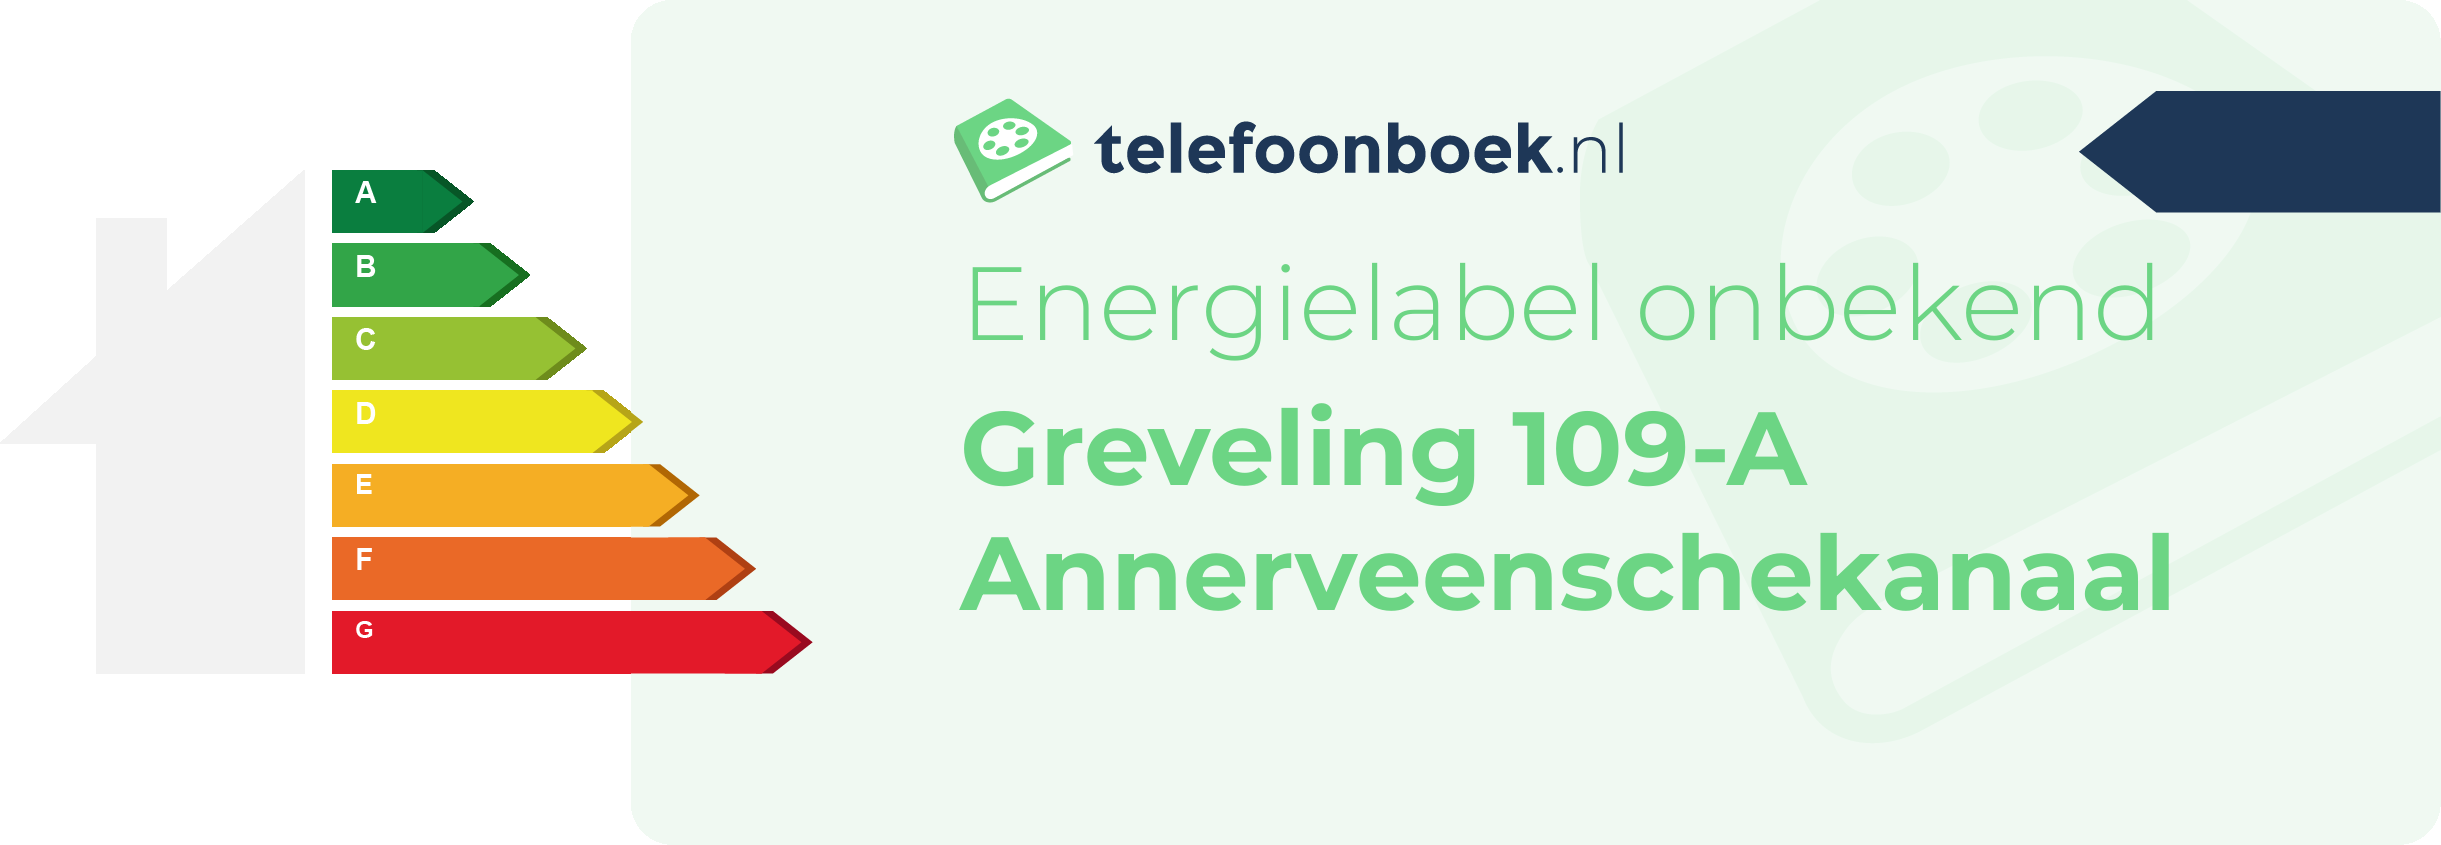 Energielabel Greveling 109-A Annerveenschekanaal